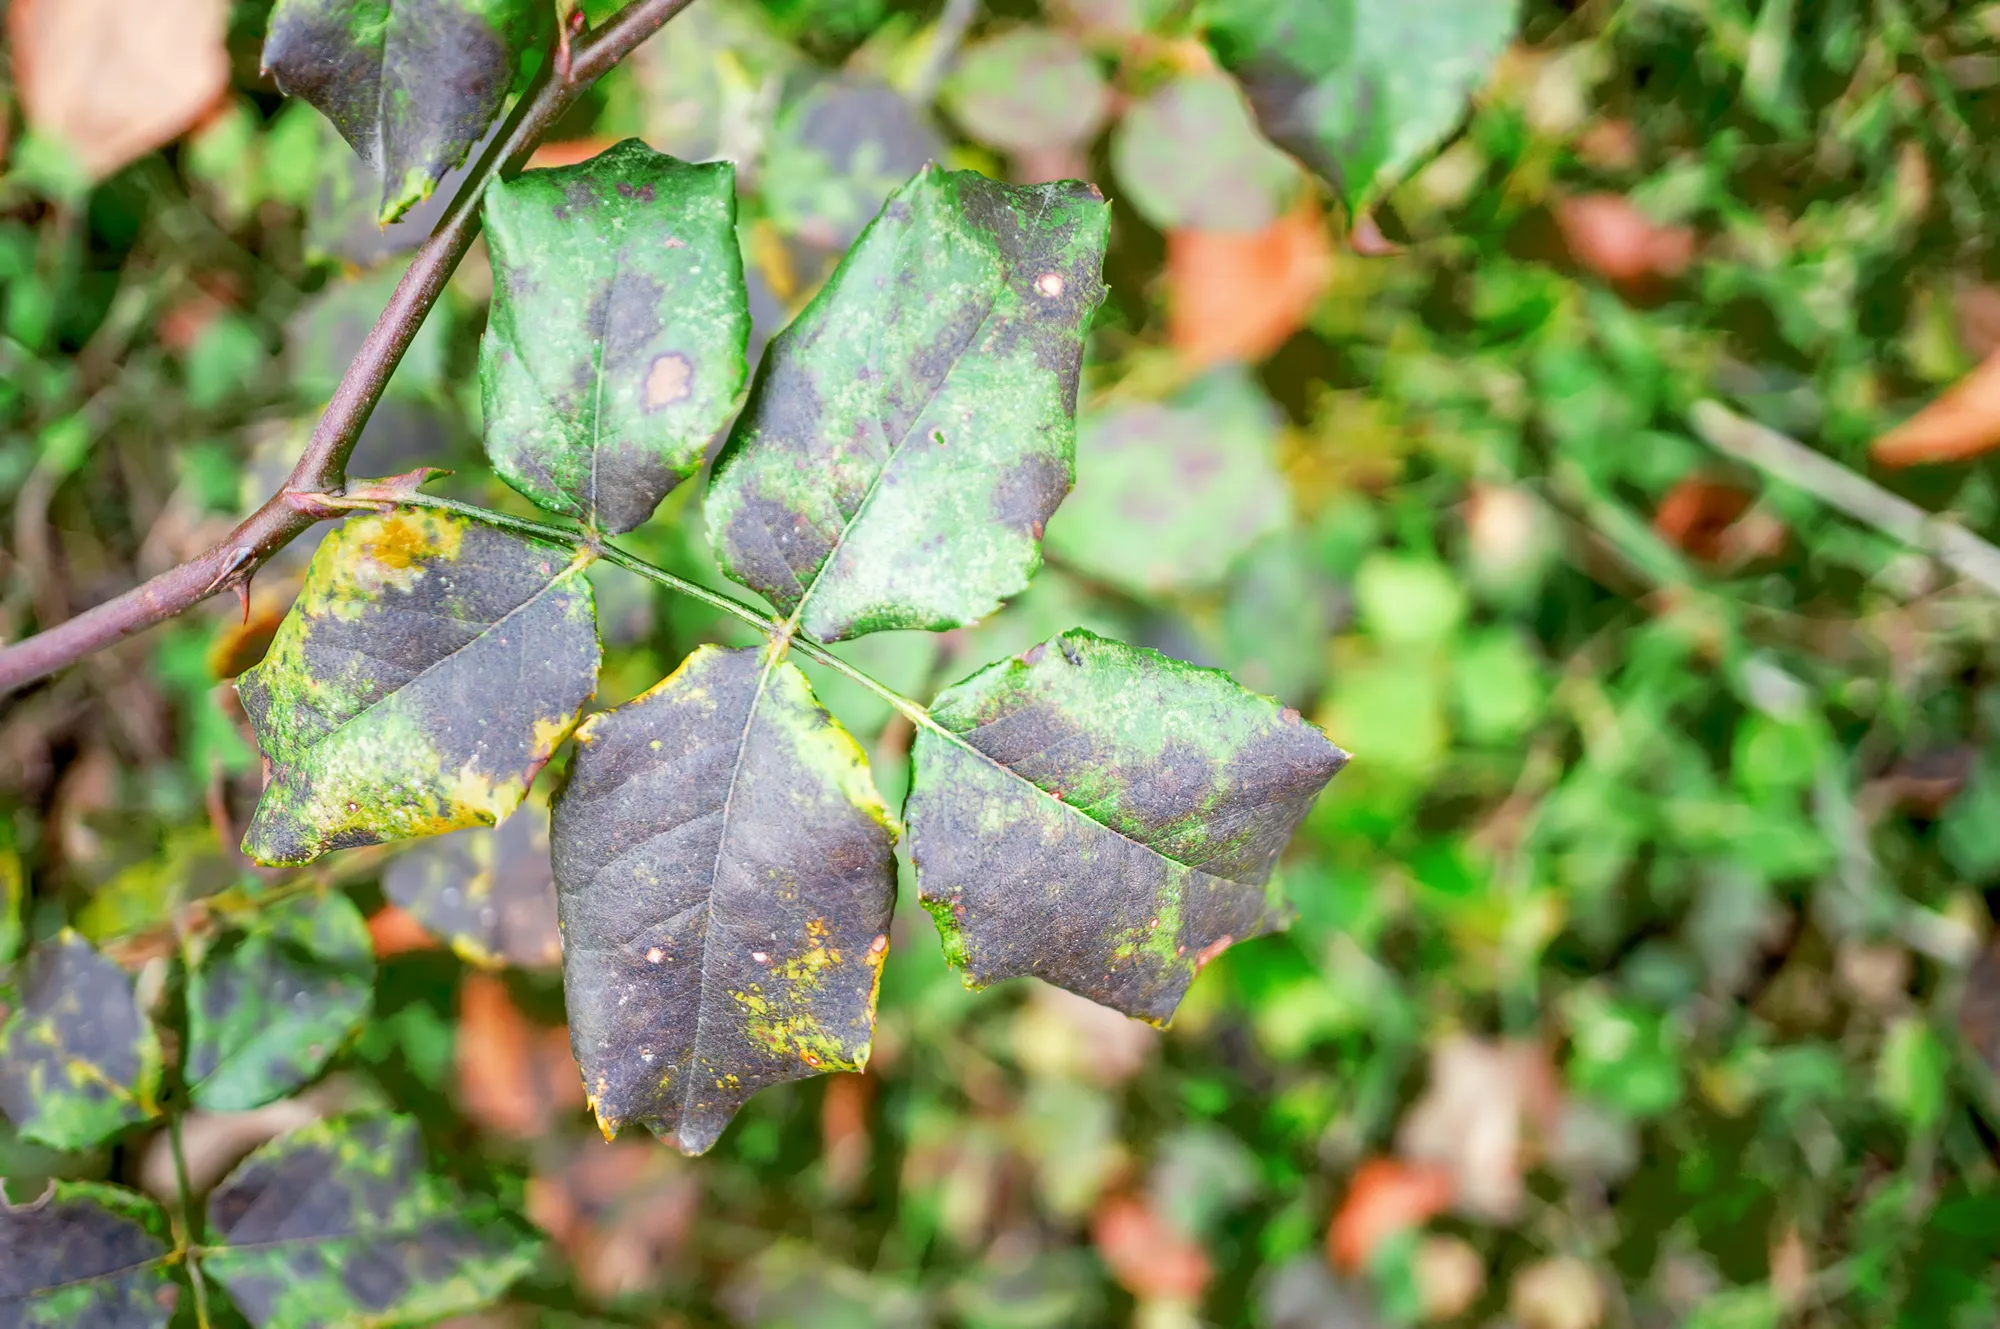 Fungal diseases of rose leaves - gray rot, rust, powdery mildew, spots. Diplocarpon rose spot